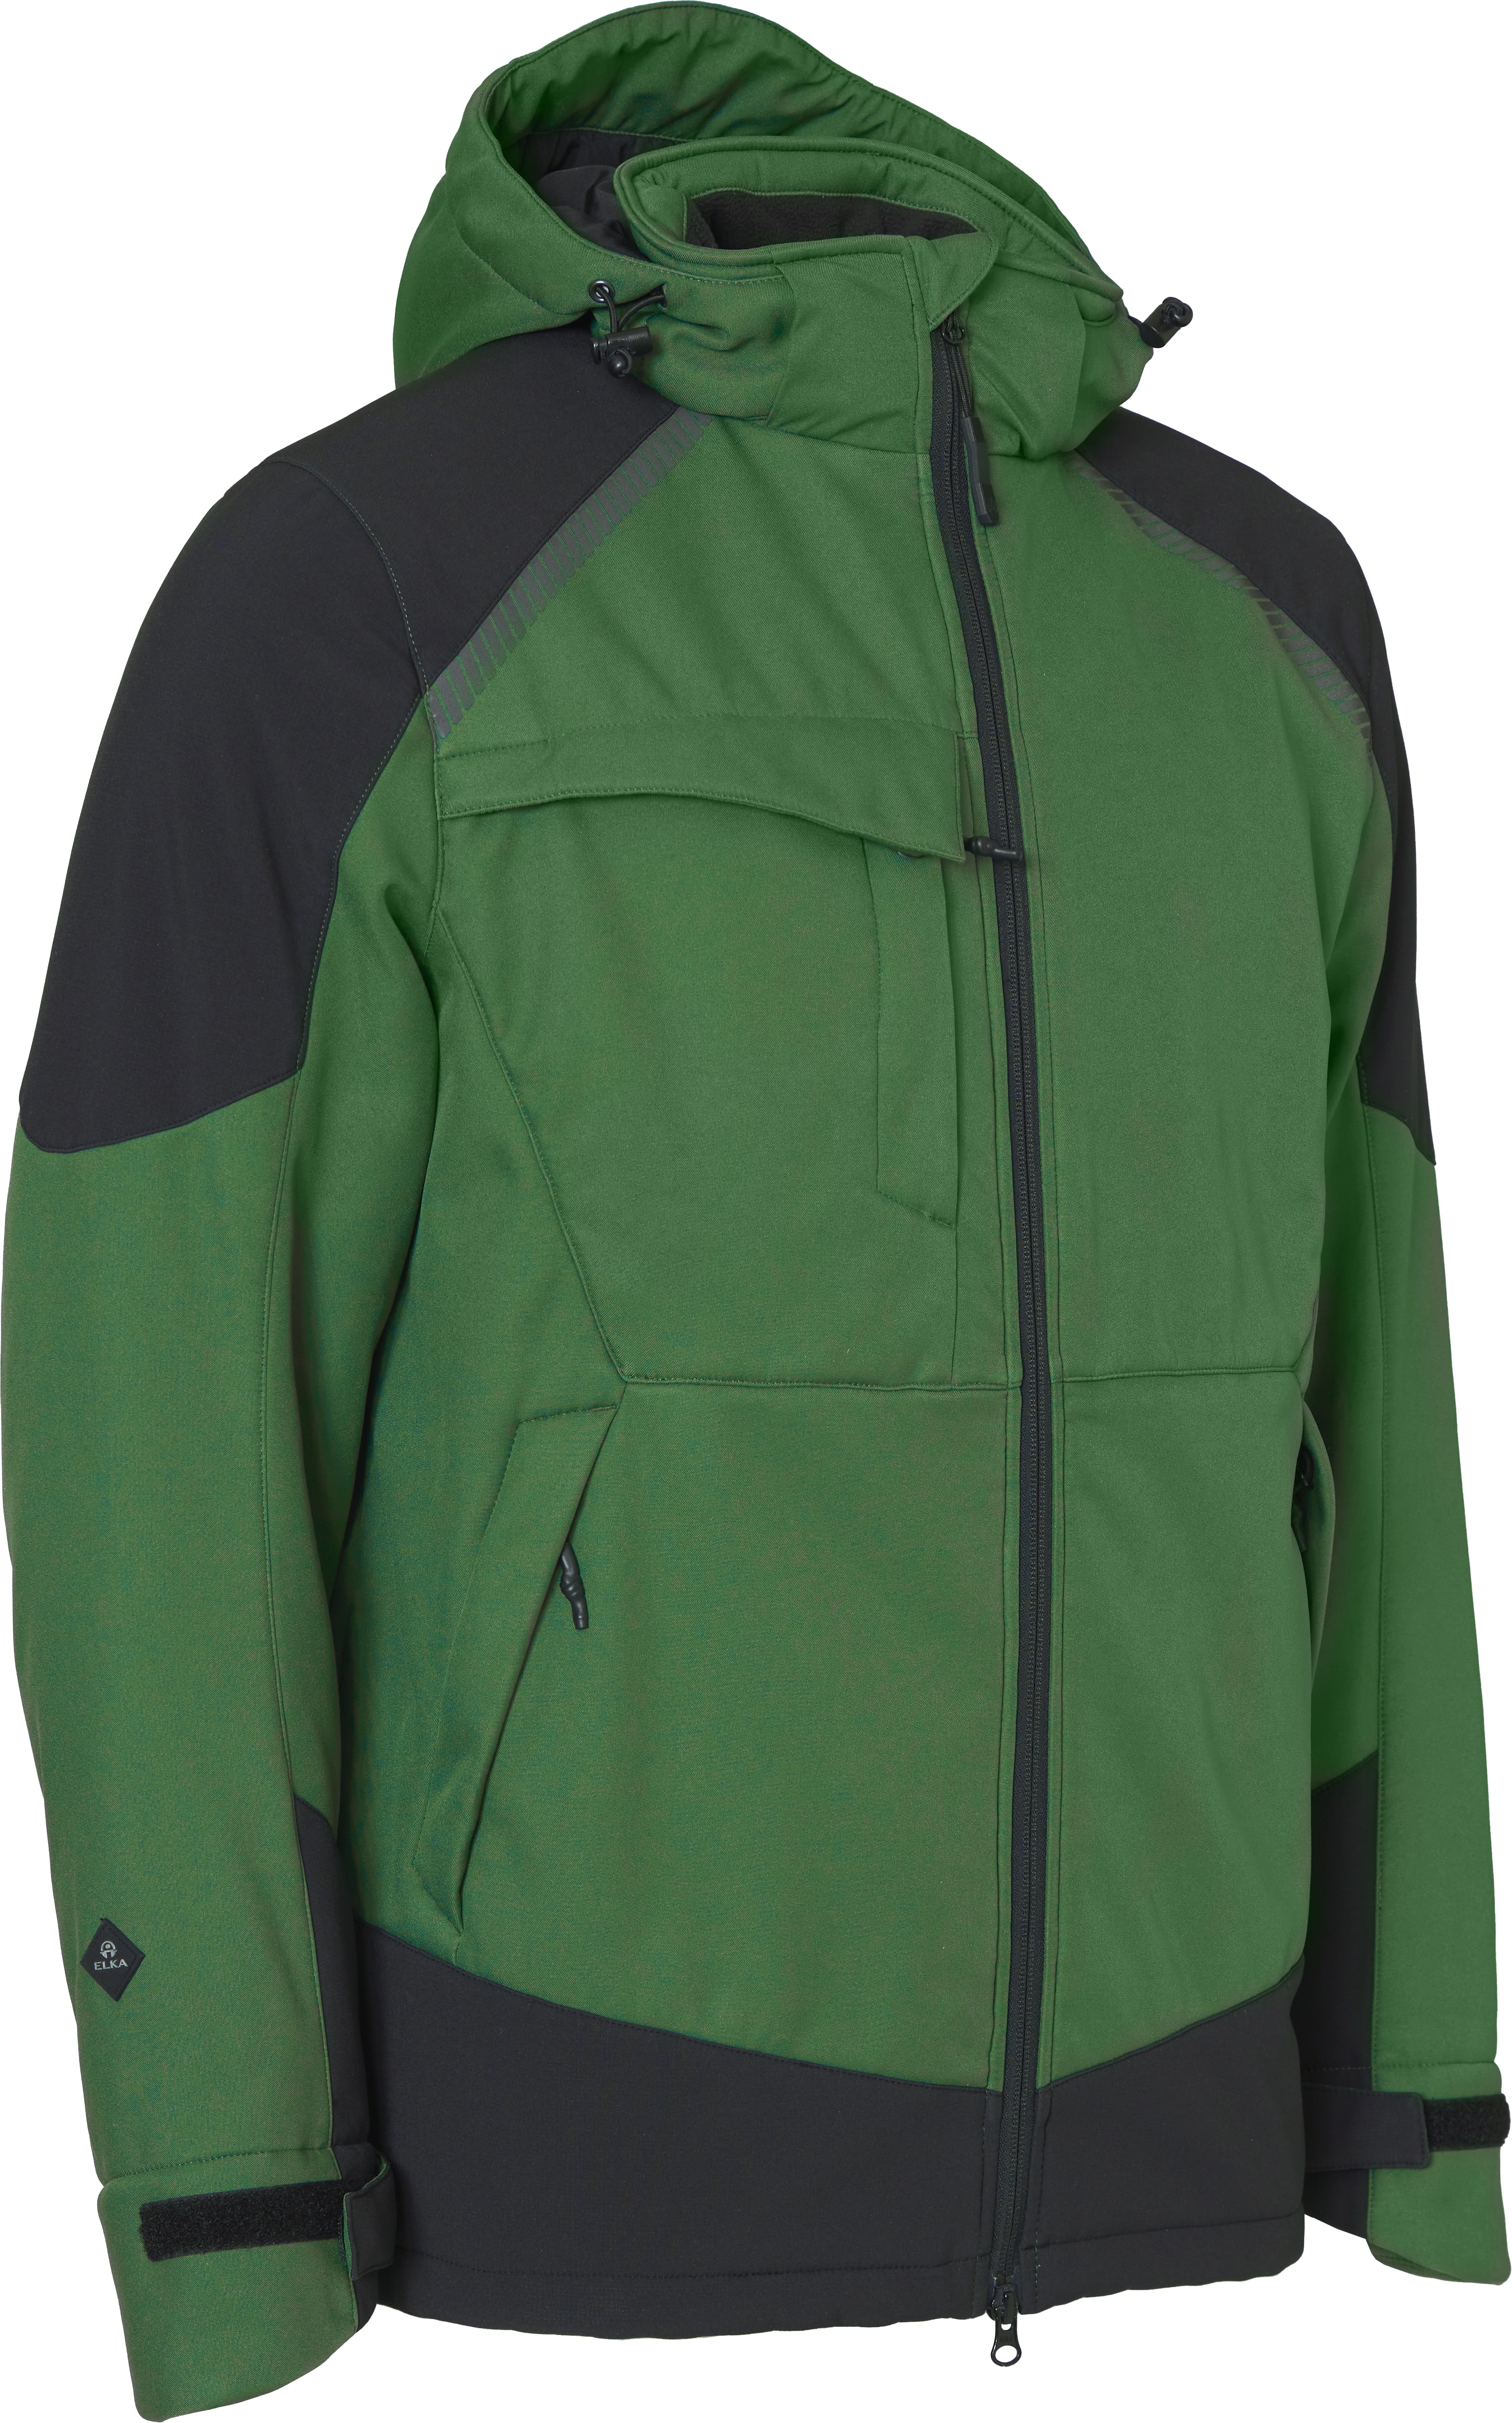 Working Xtreme Winter Softshell Jacke - Atmungsaktiv und wasserabweisend - grün/schwarz